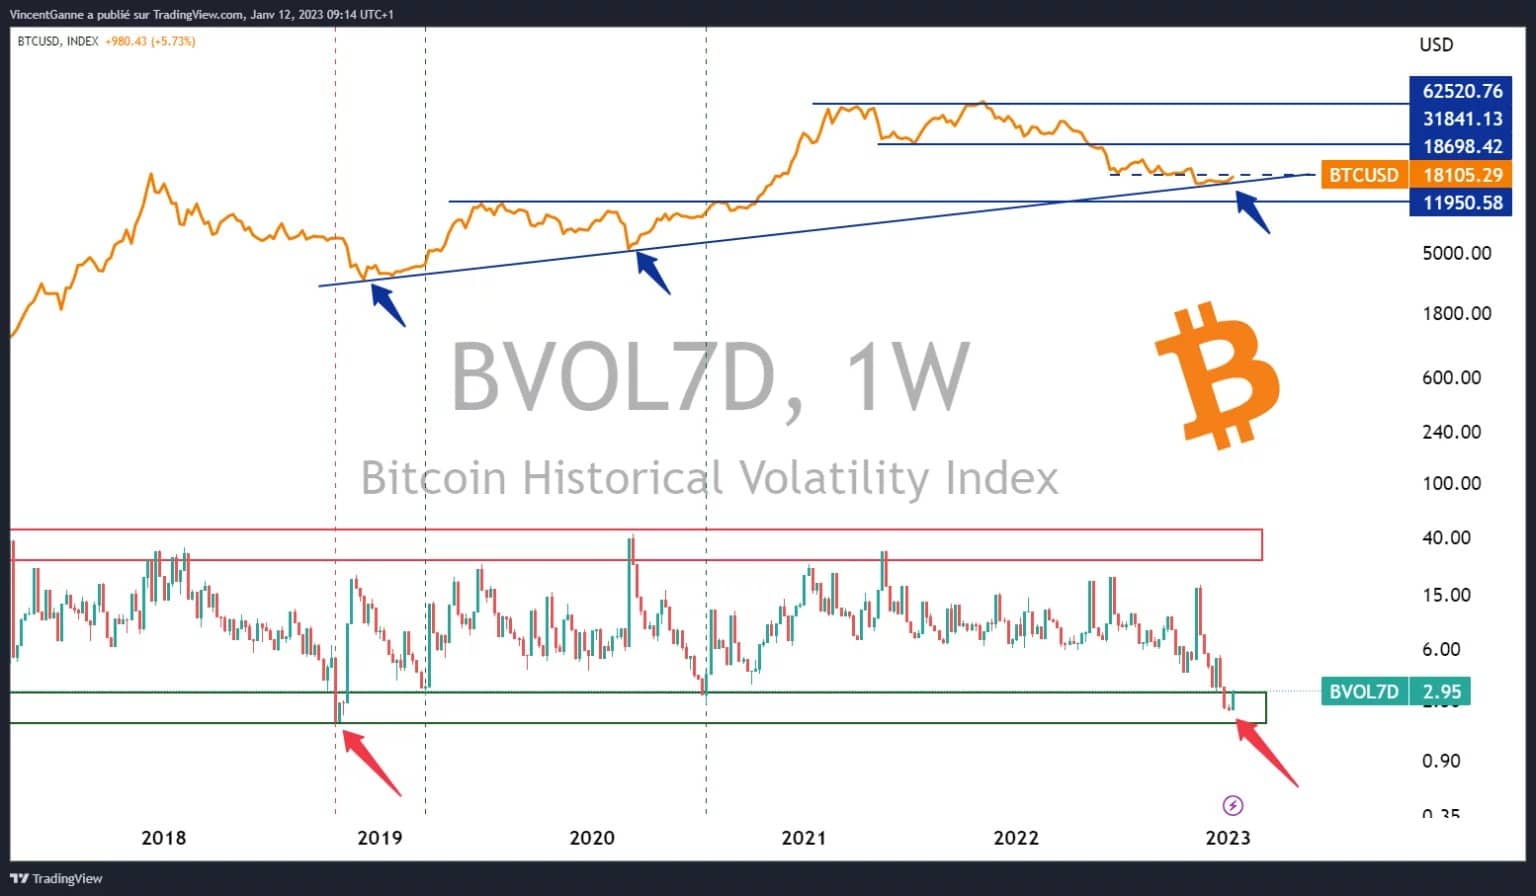 Grafico che espone il prezzo di chiusura settimanale del bitcoin, giustapposto alla sua volatilità a 7 giorni